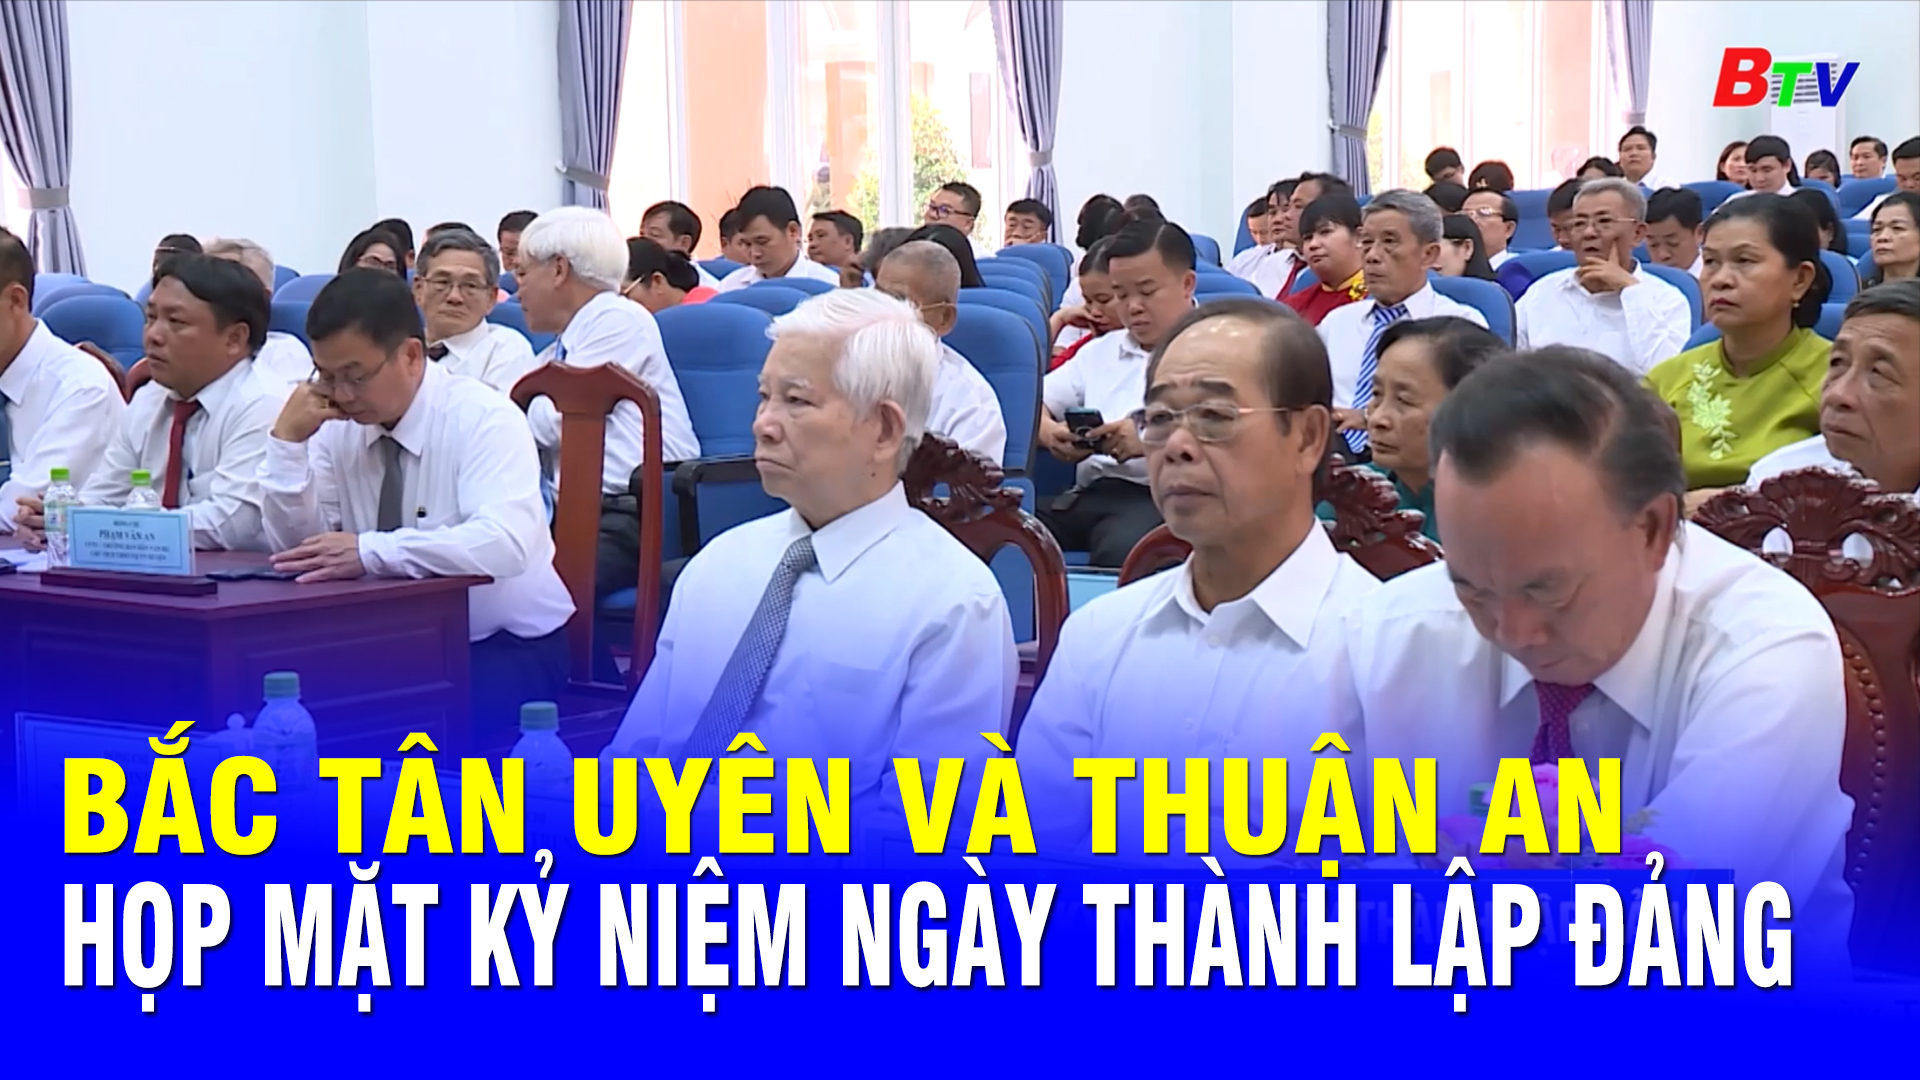 Huyện Bắc Tân Uyên và thành phố Thuận An họp mặt Kỷ niệm Ngày thành lập Đảng